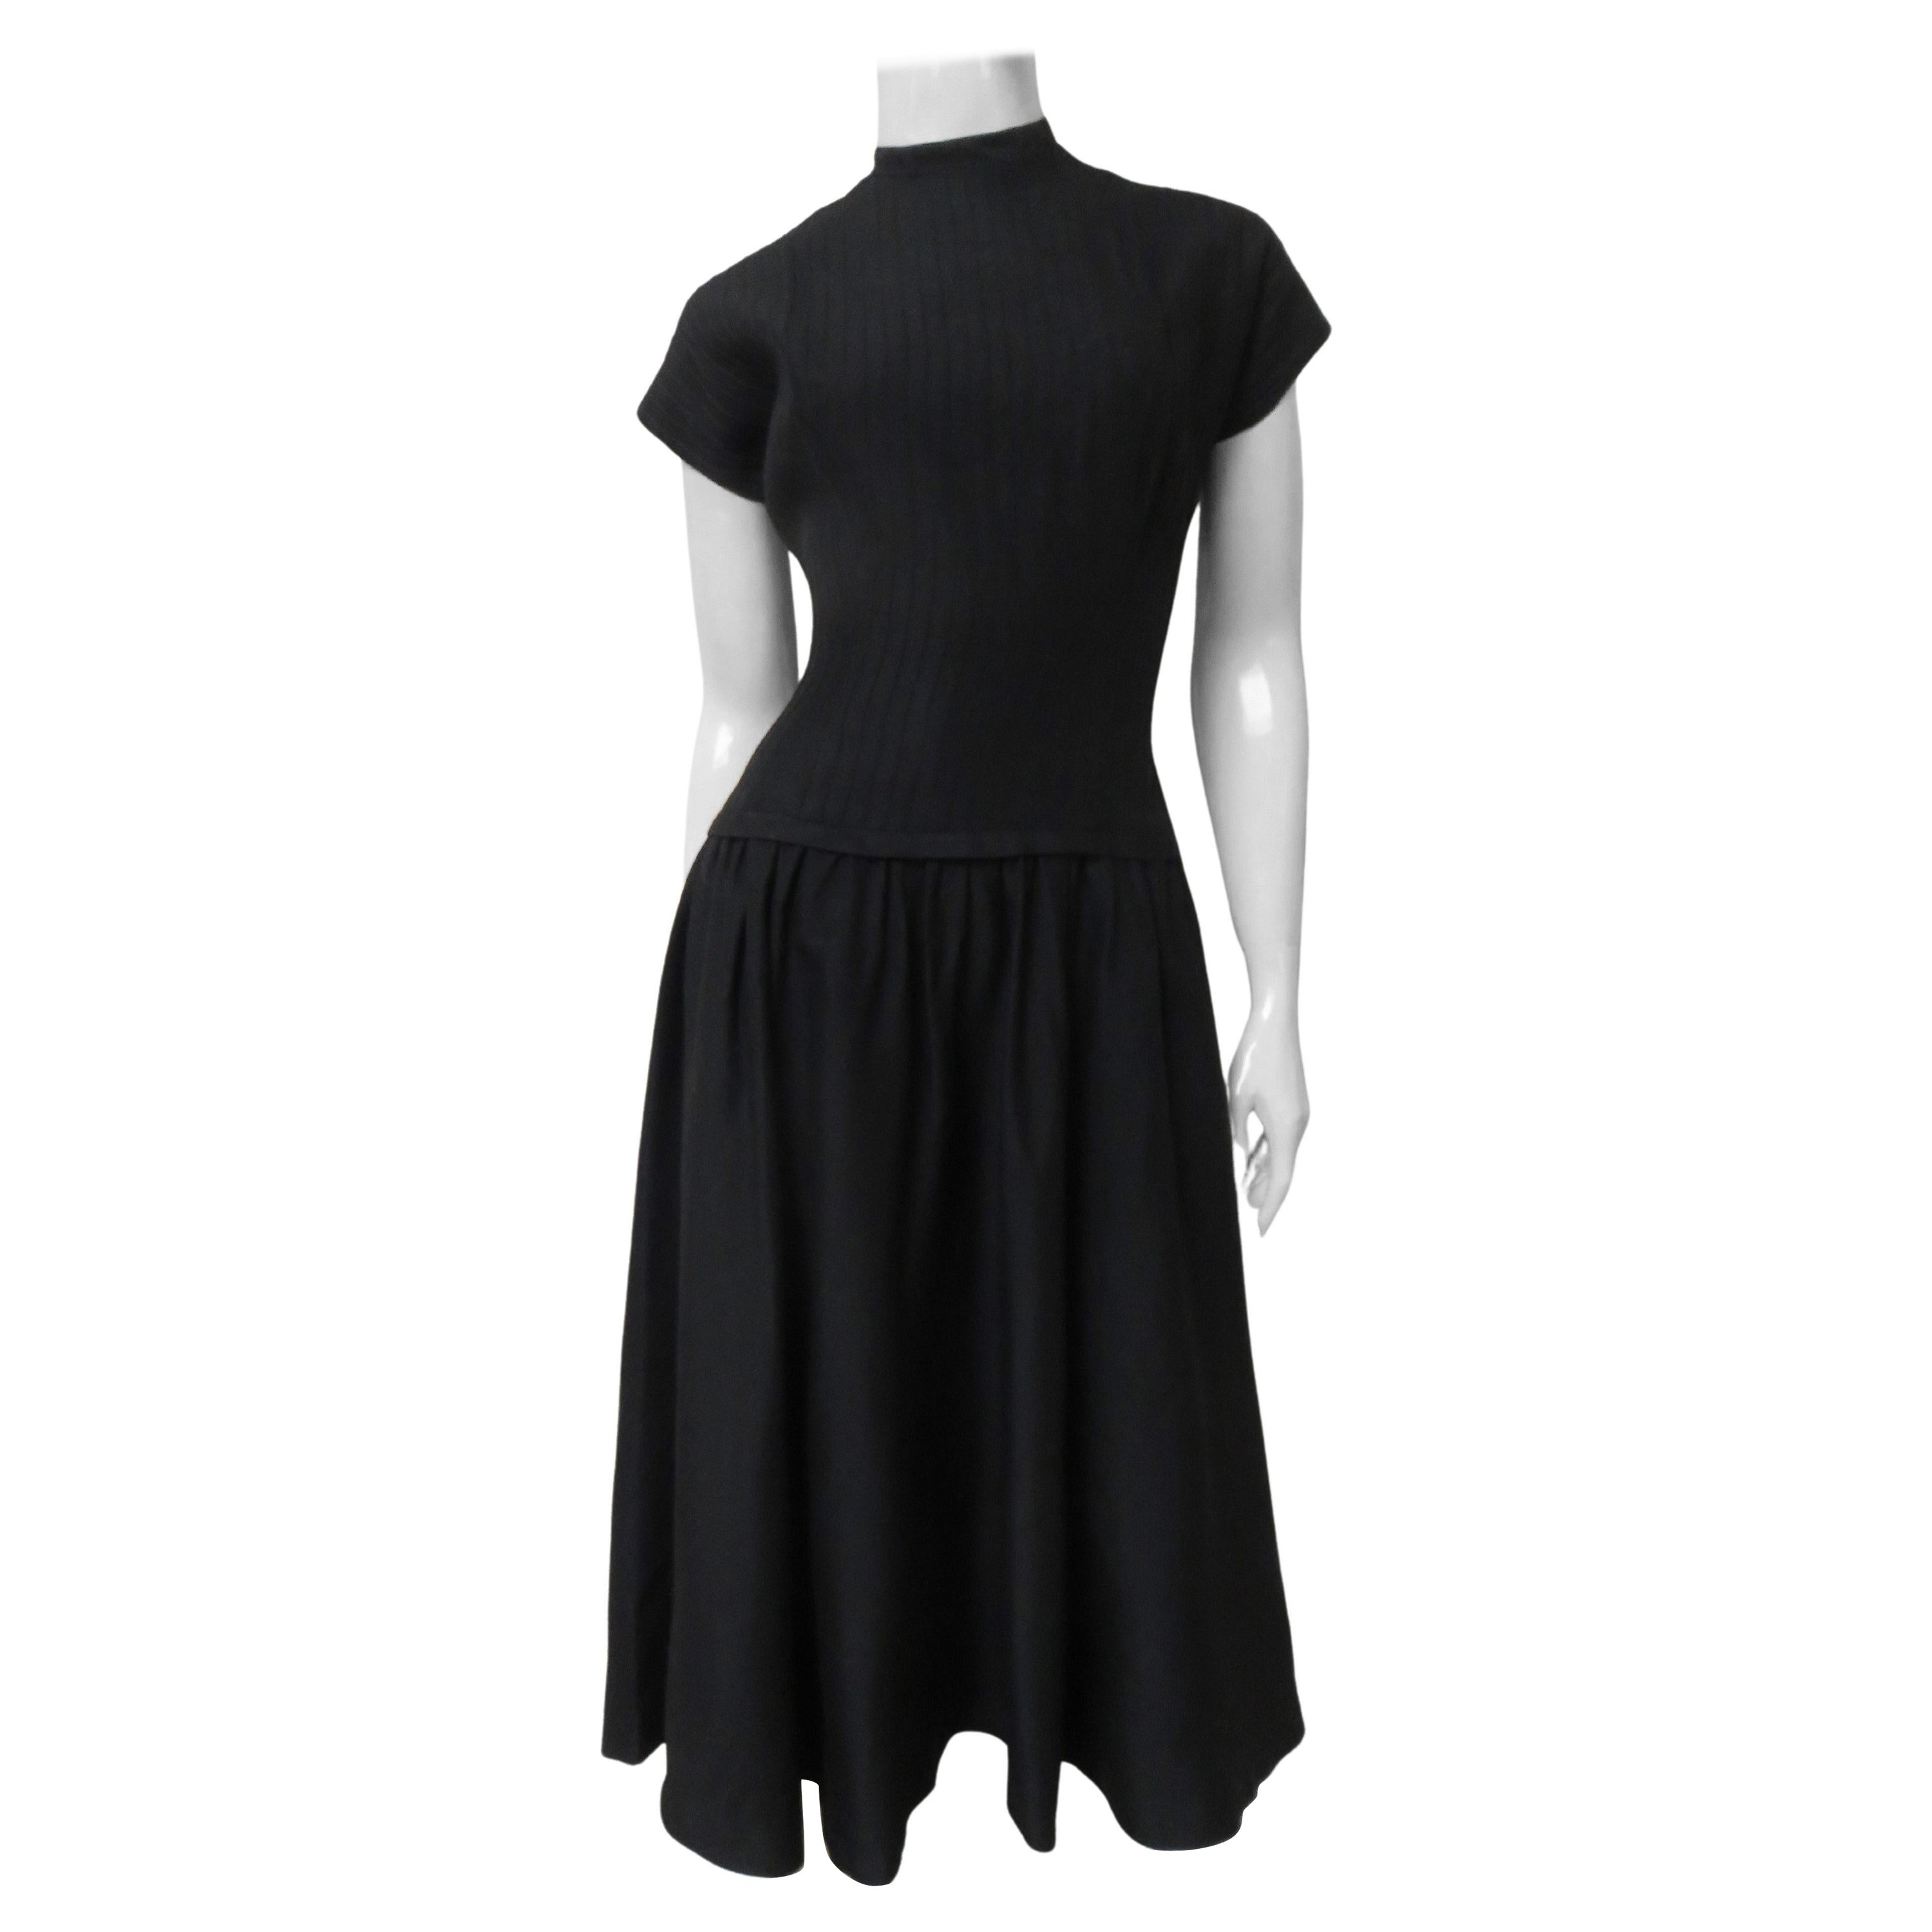 Jane Andre 1950s Full Skirt Dress For Sale